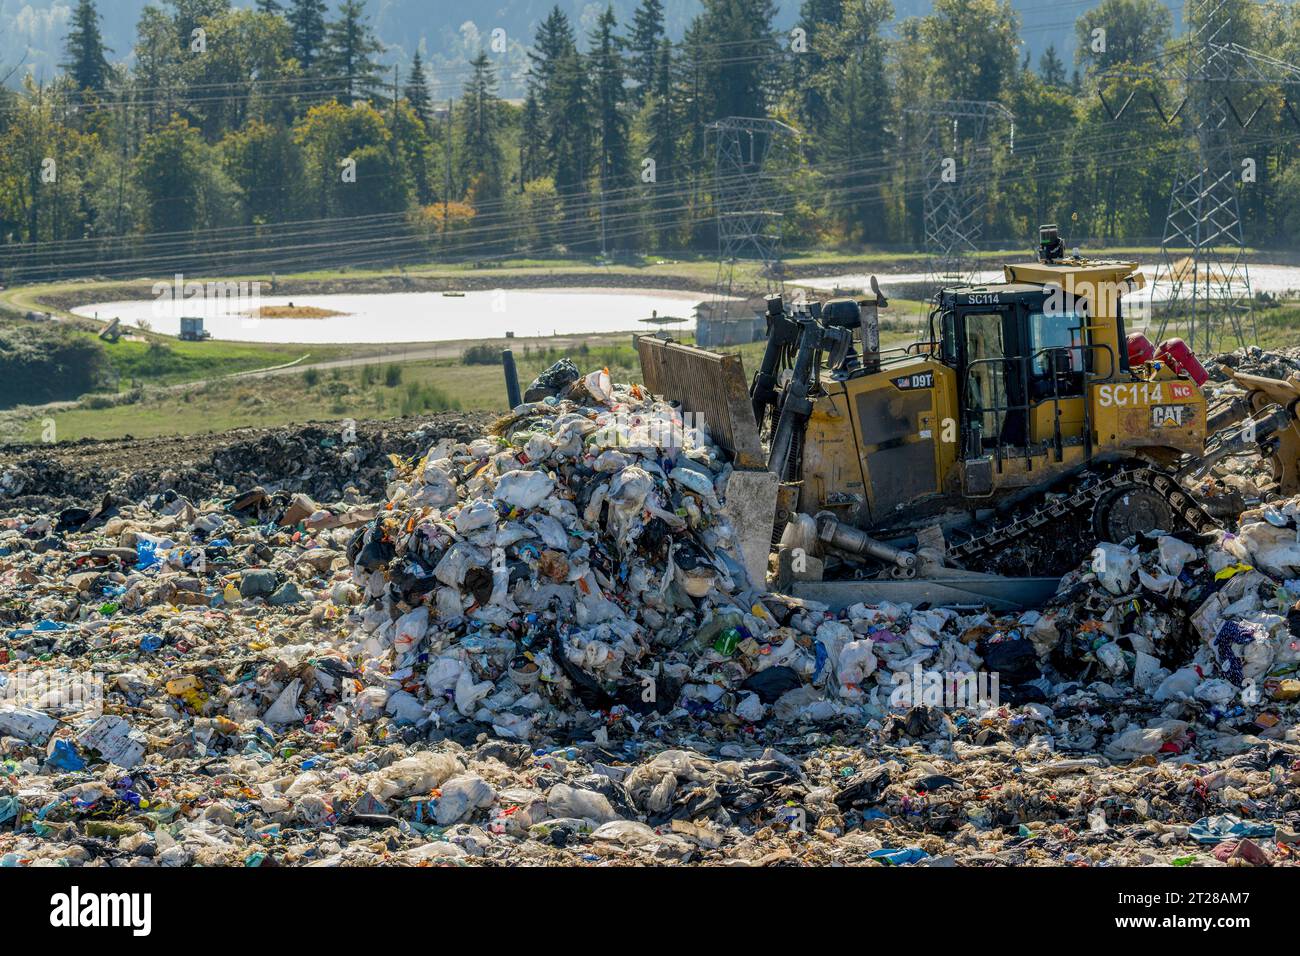 De la machinerie lourde répand les ordures dans les installations d'enfouissement régional de Cedar Hills du comté de King, exploitées par la Division des déchets solides du comté de King Banque D'Images